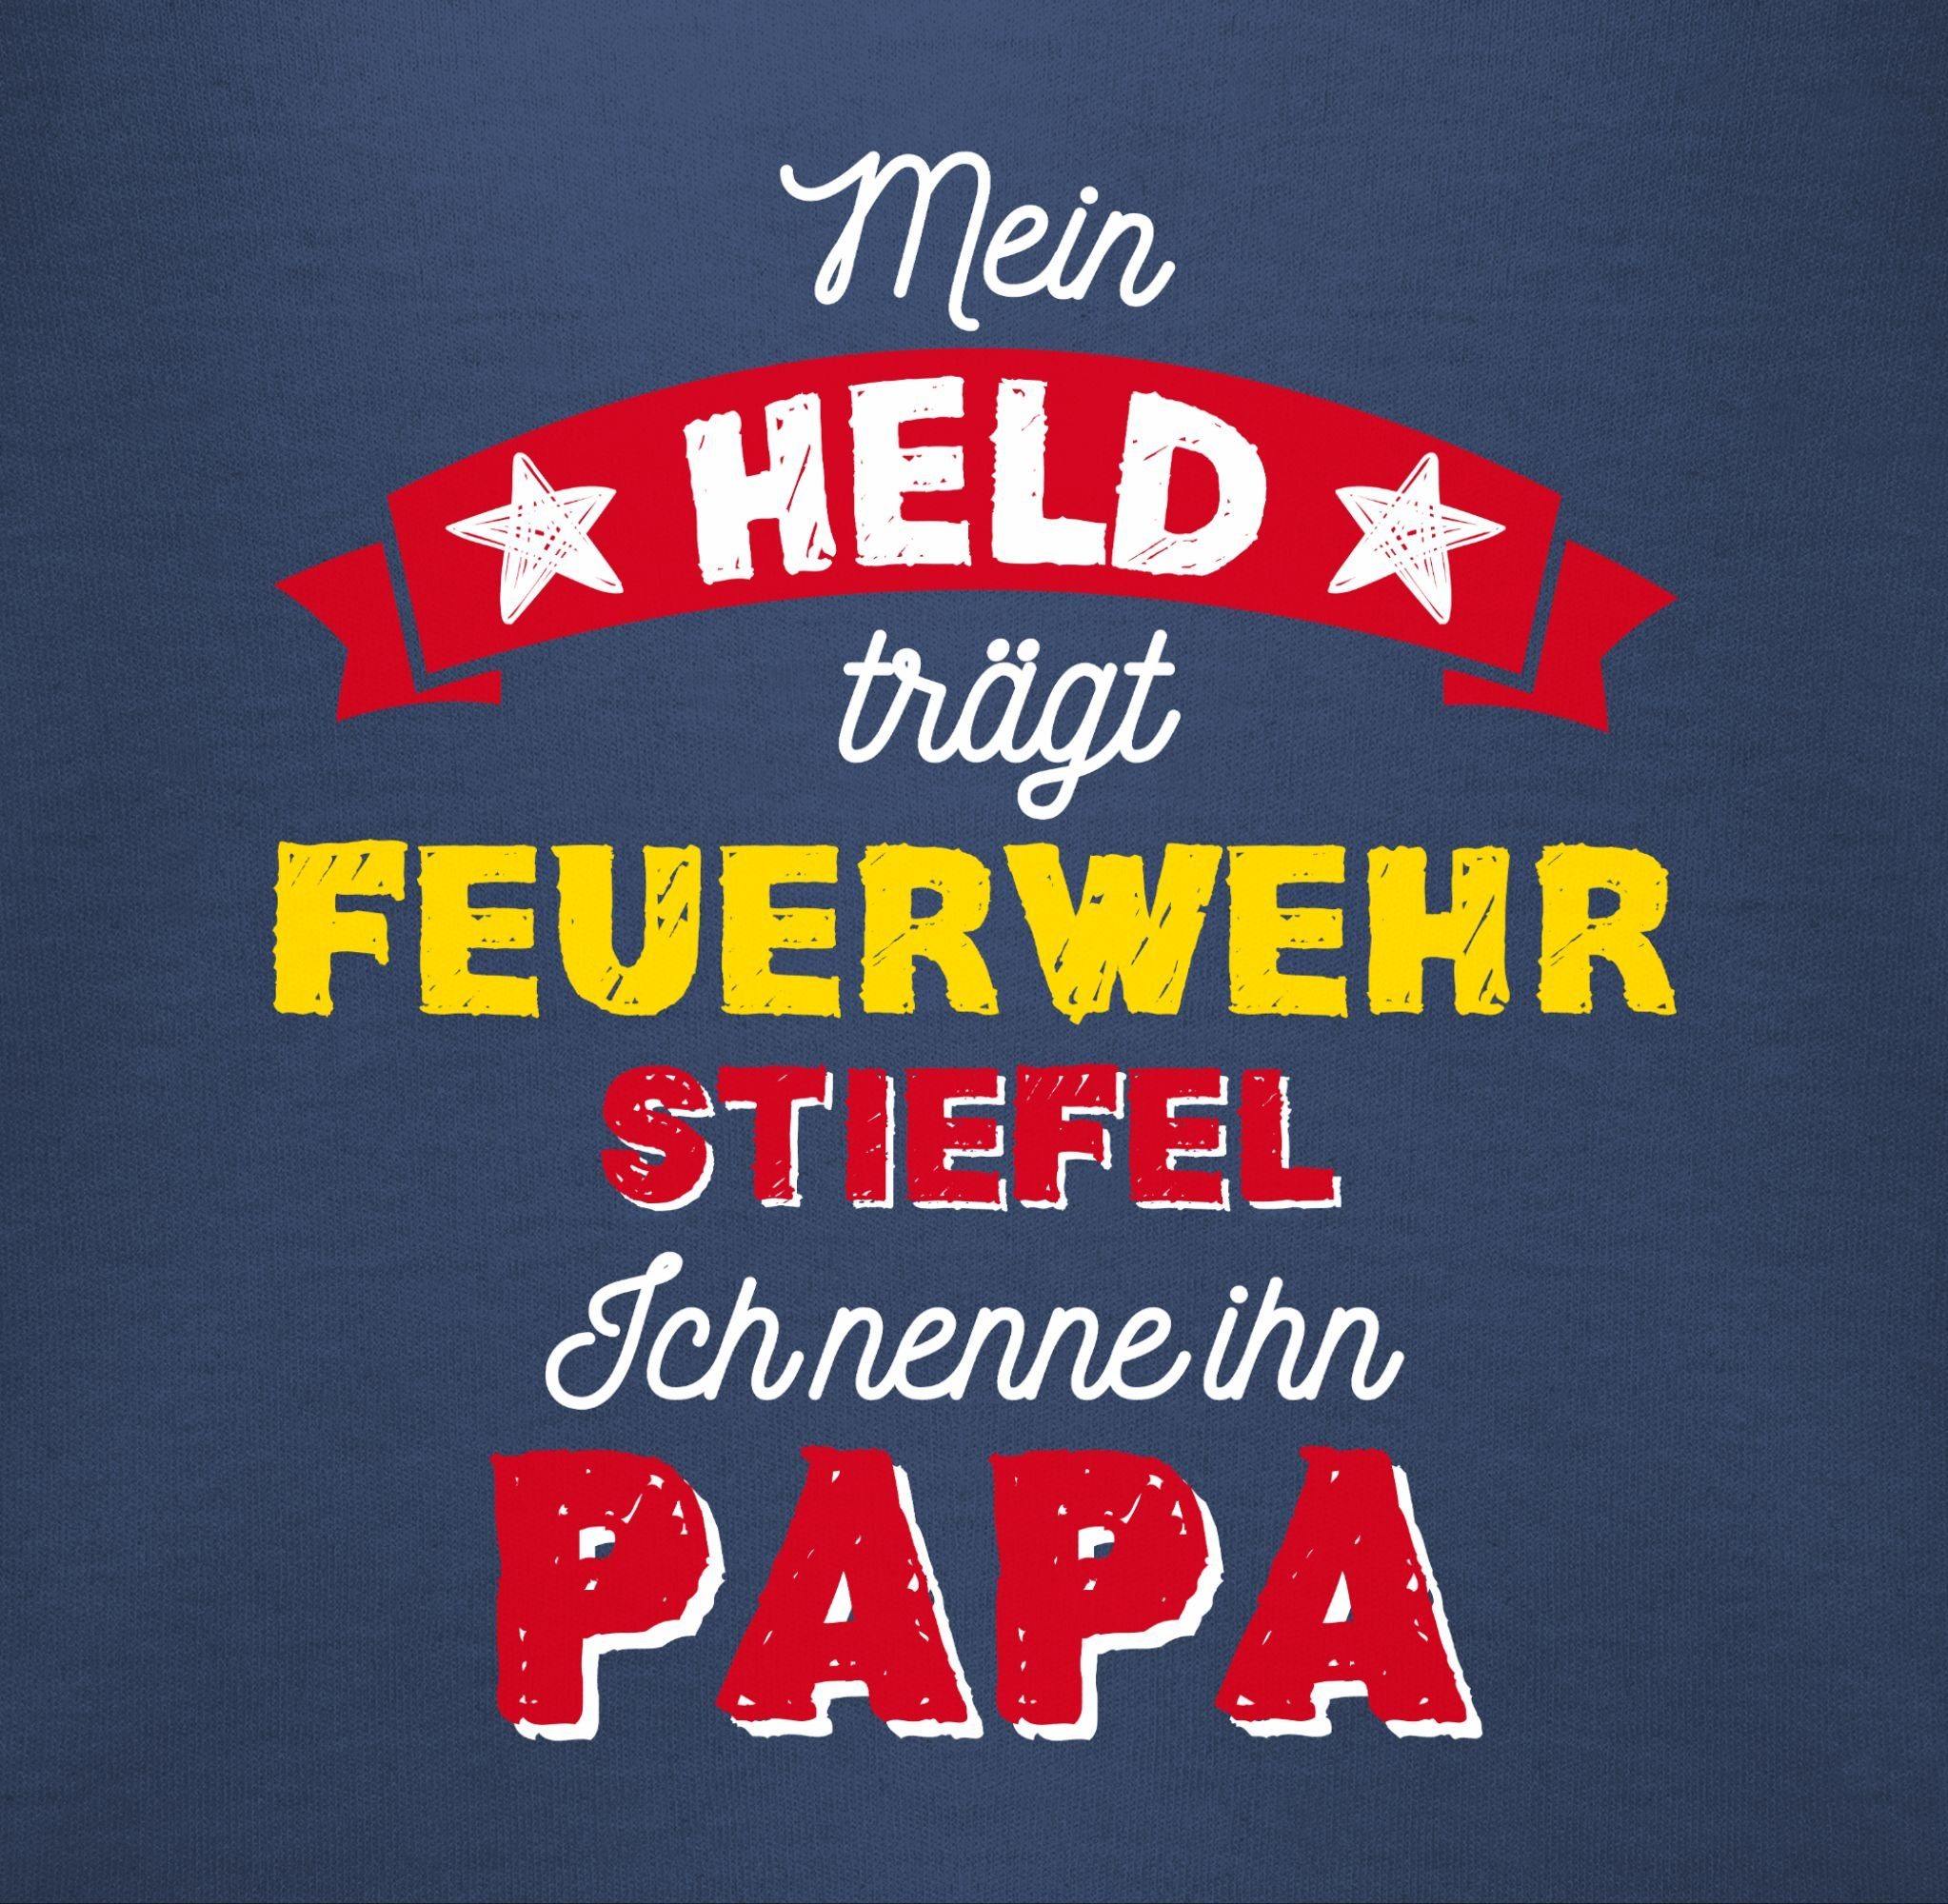 Baby Navy 1 trägt Held Blau Mein Vatertag Feuerwehrstiefel Geschenk Shirtbody Shirtracer